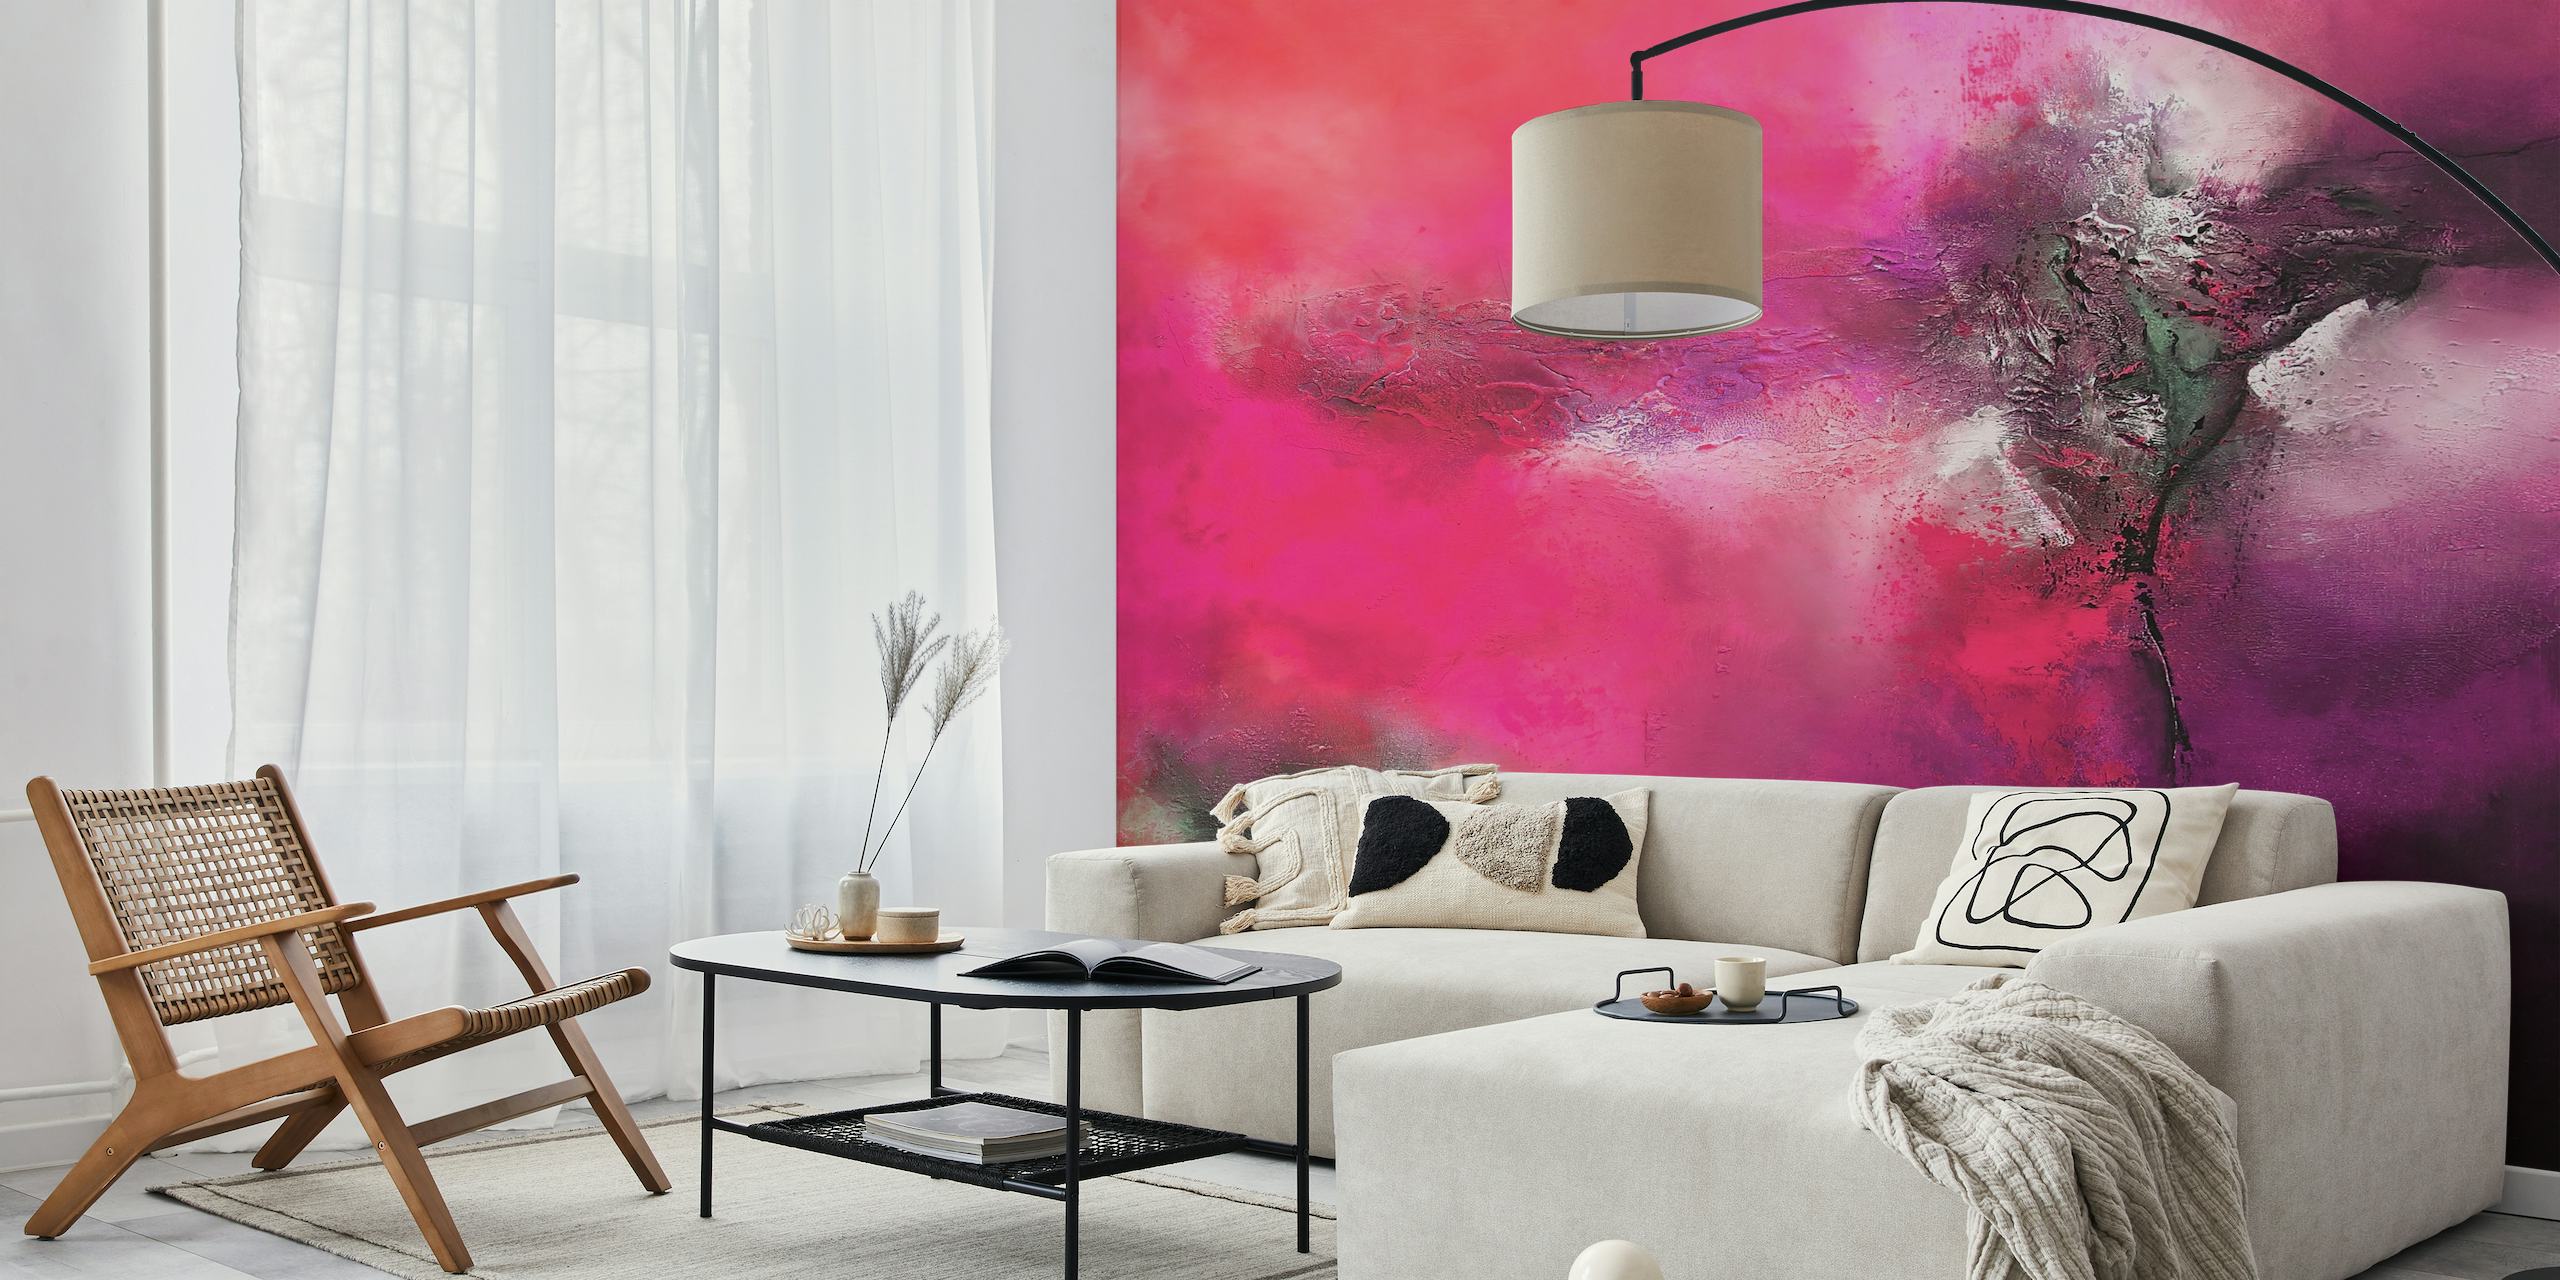 Abstrakt vægmaleri med levende pink og grå nuancer, der ligner udtryksfuld kunst